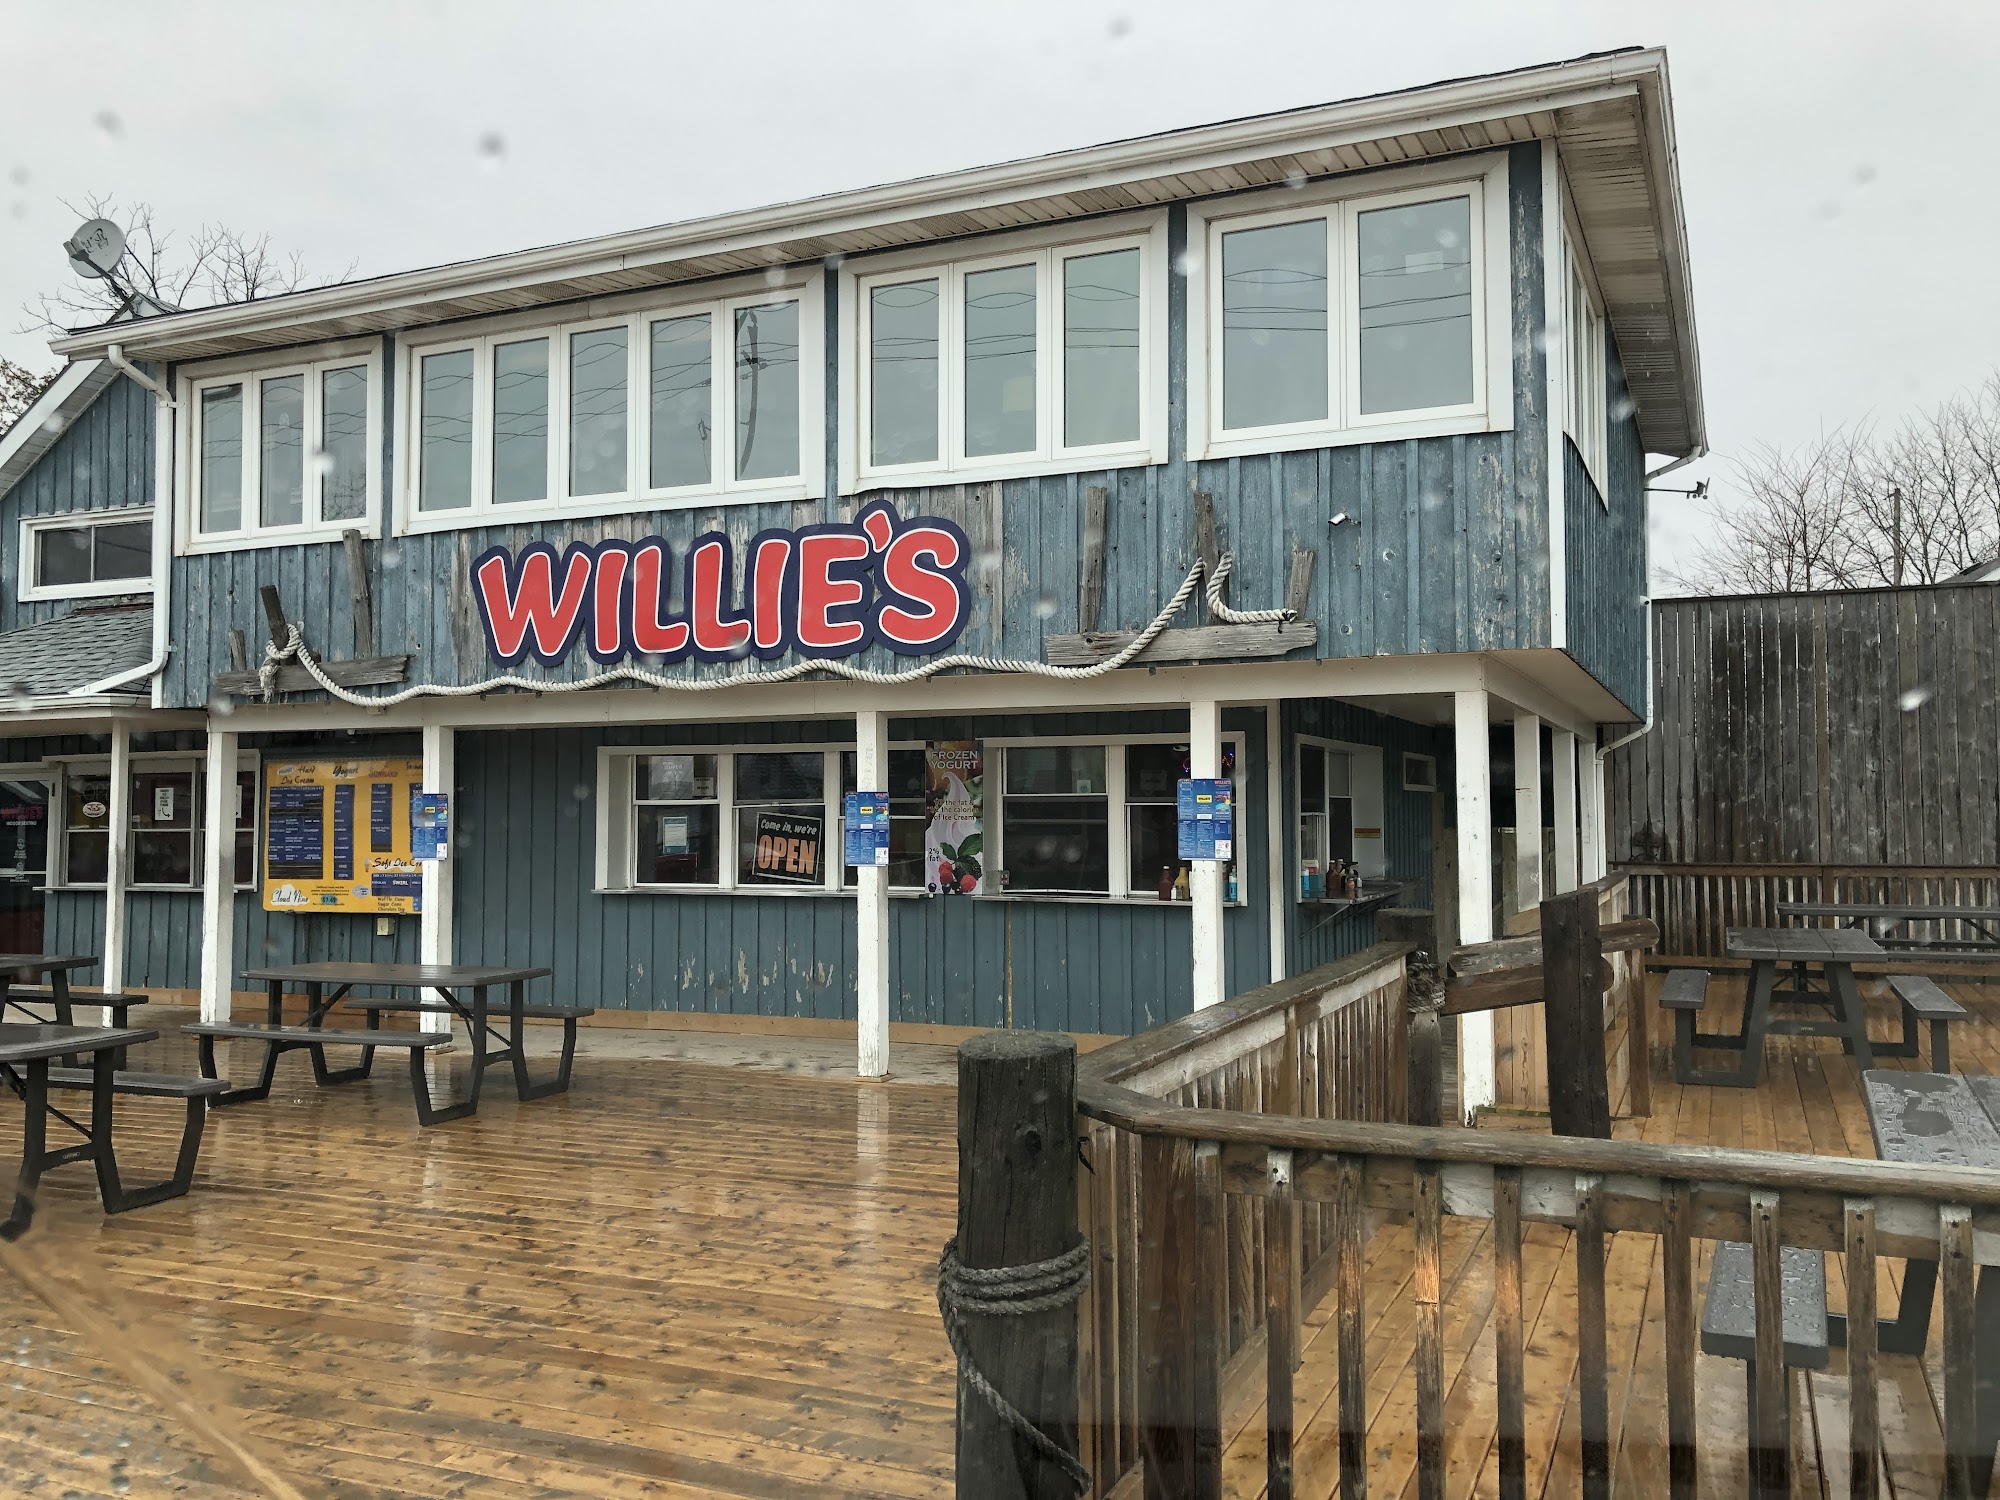 Willie's